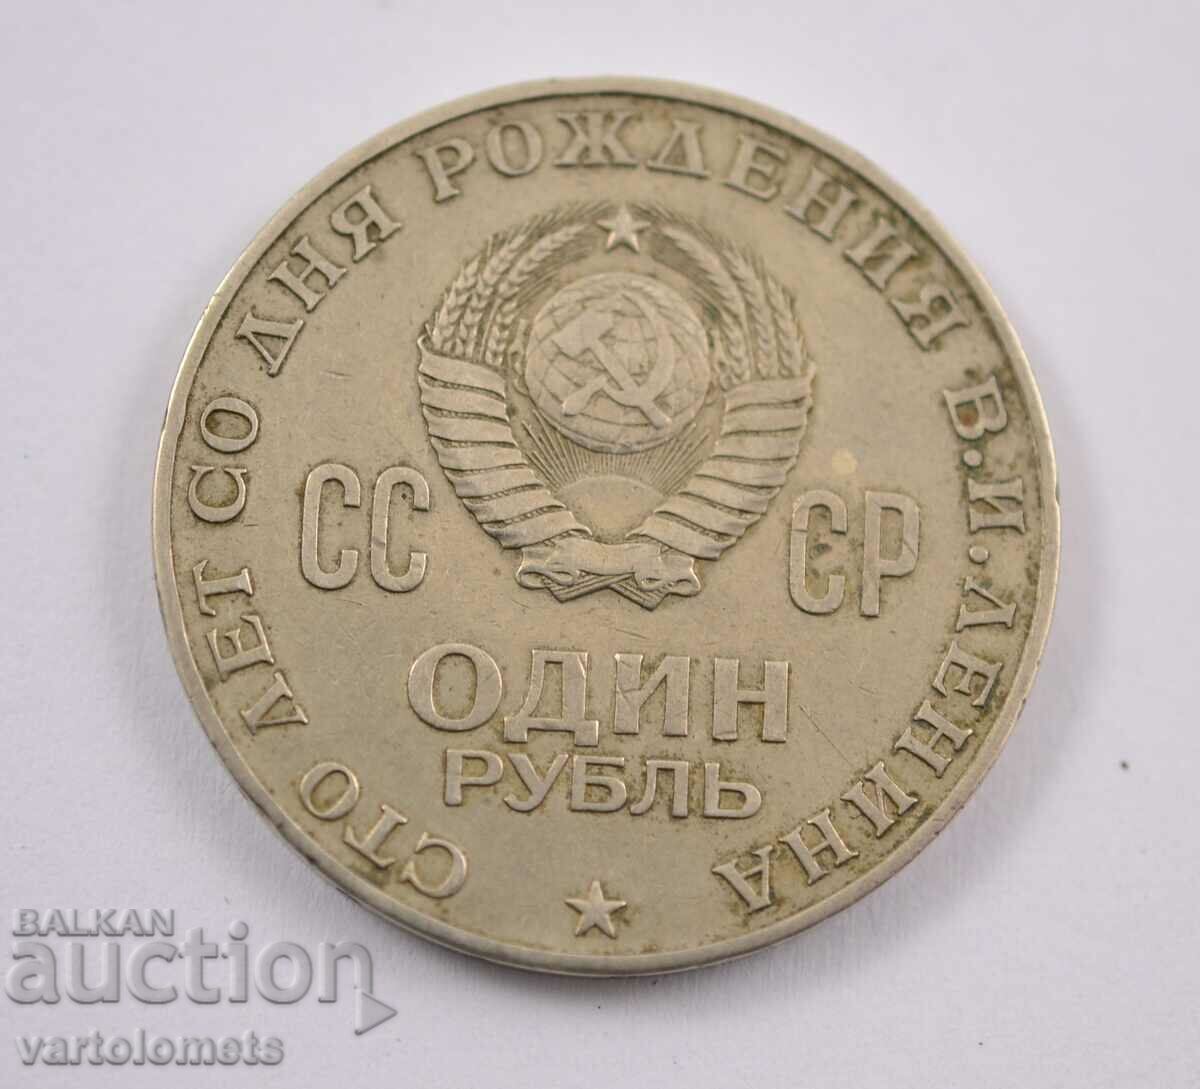 1 rublă 1970 - CCCP „100 de ani de la nașterea lui V.I. Lenin”